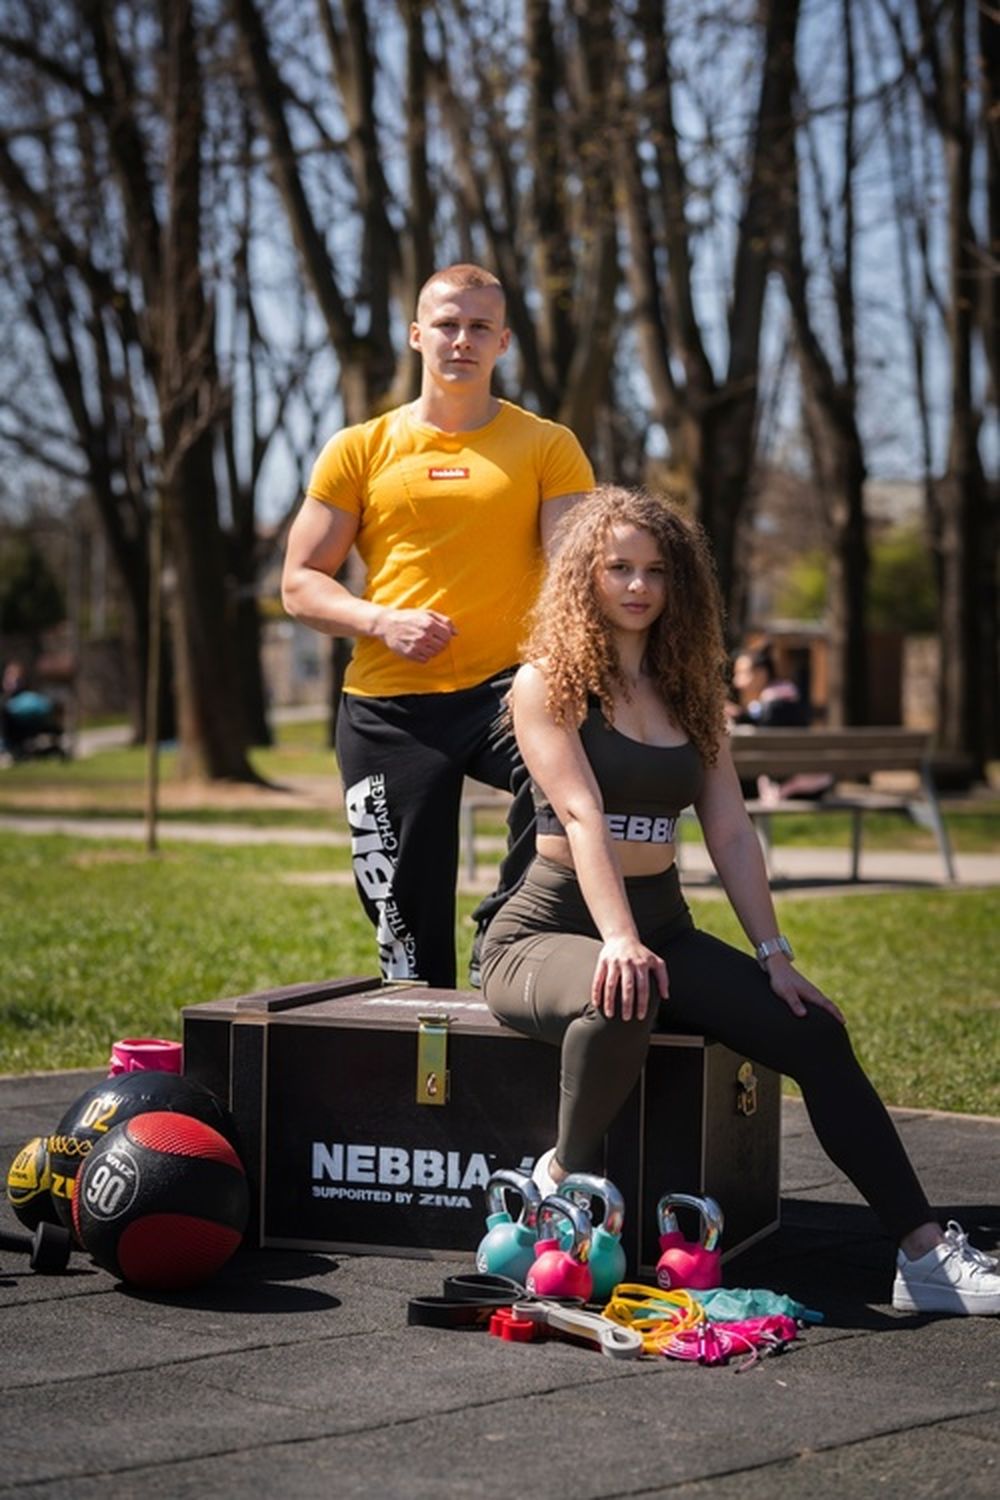 FOTO: Žilinská fitness značka darovala obyvateľom workout box s pomôckami na cvičenie , foto 15